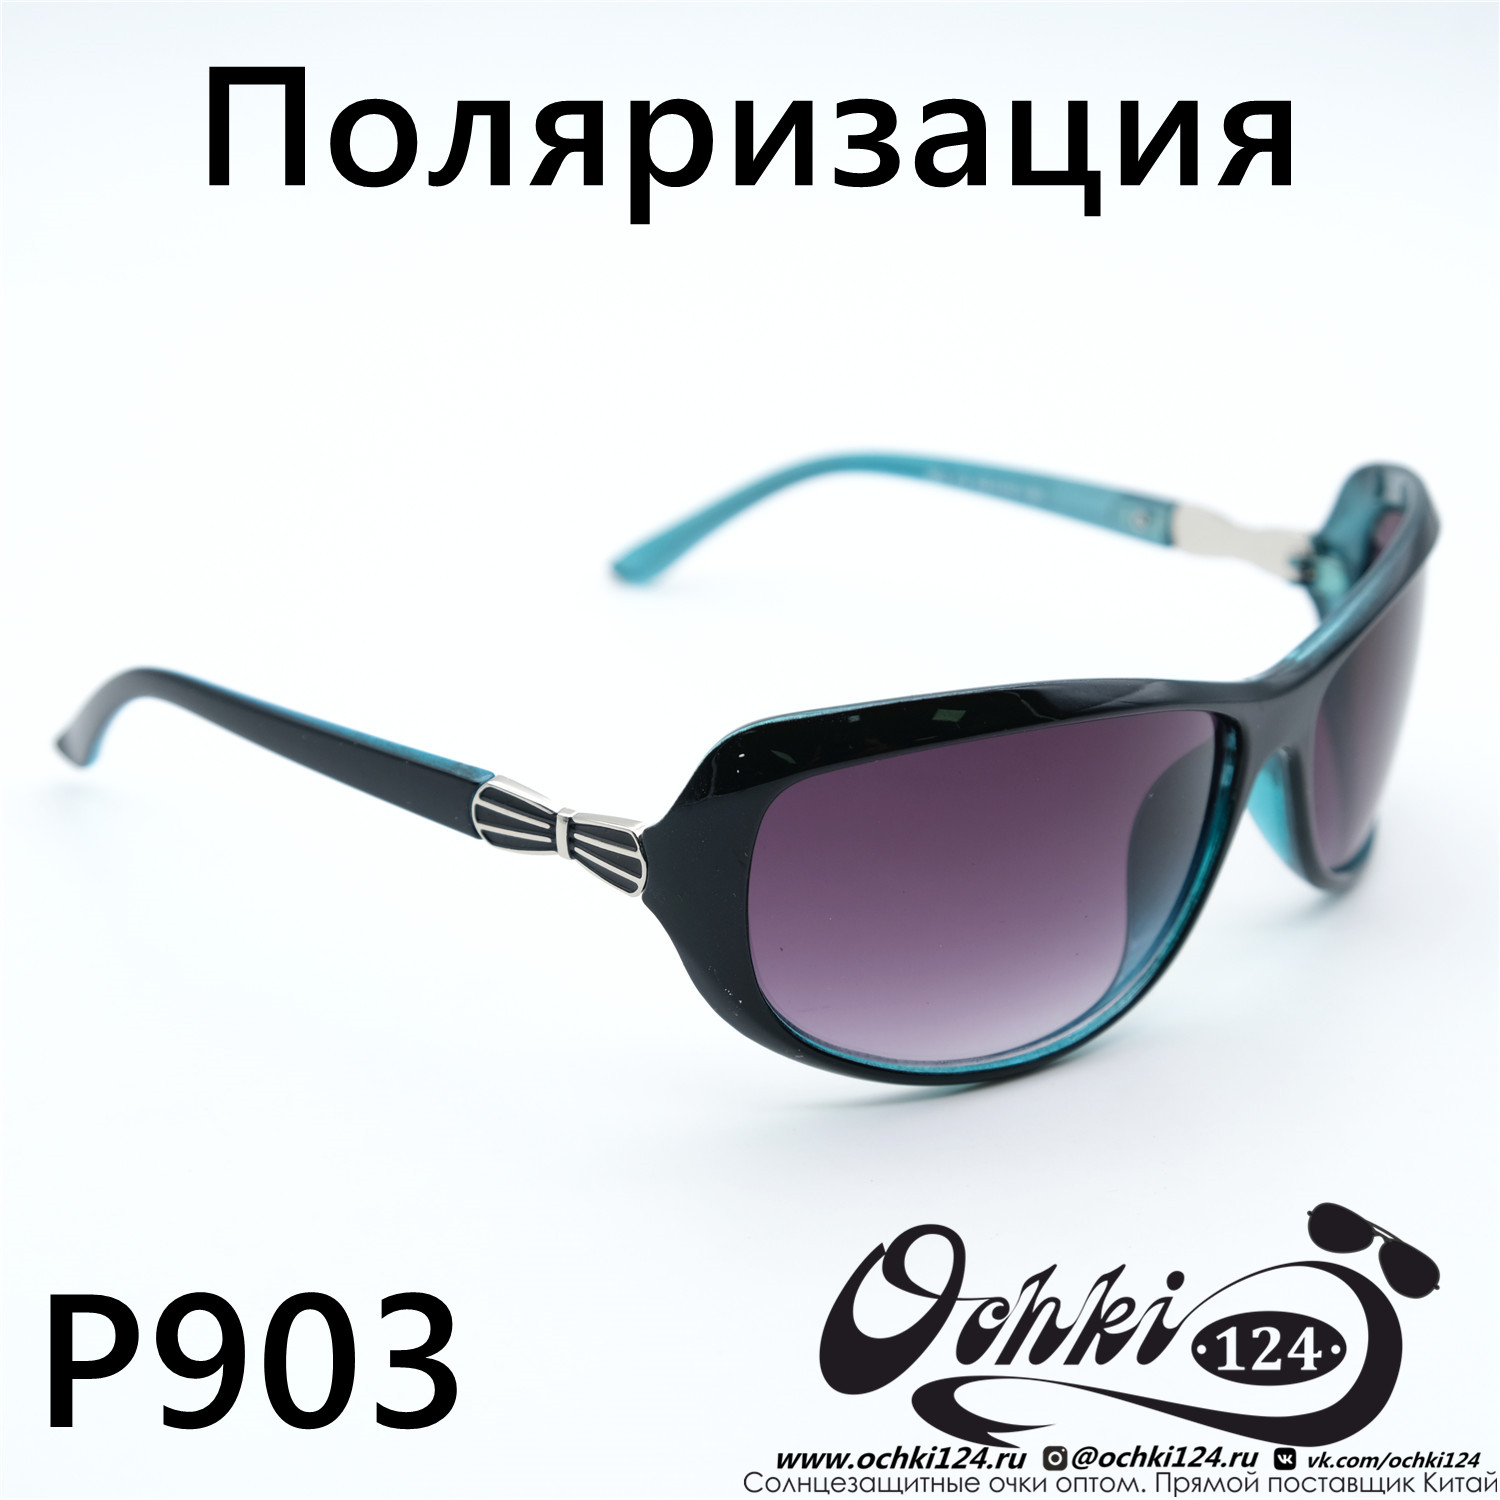  Солнцезащитные очки картинка Женские Prius Polarized Стандартные P903-C4 